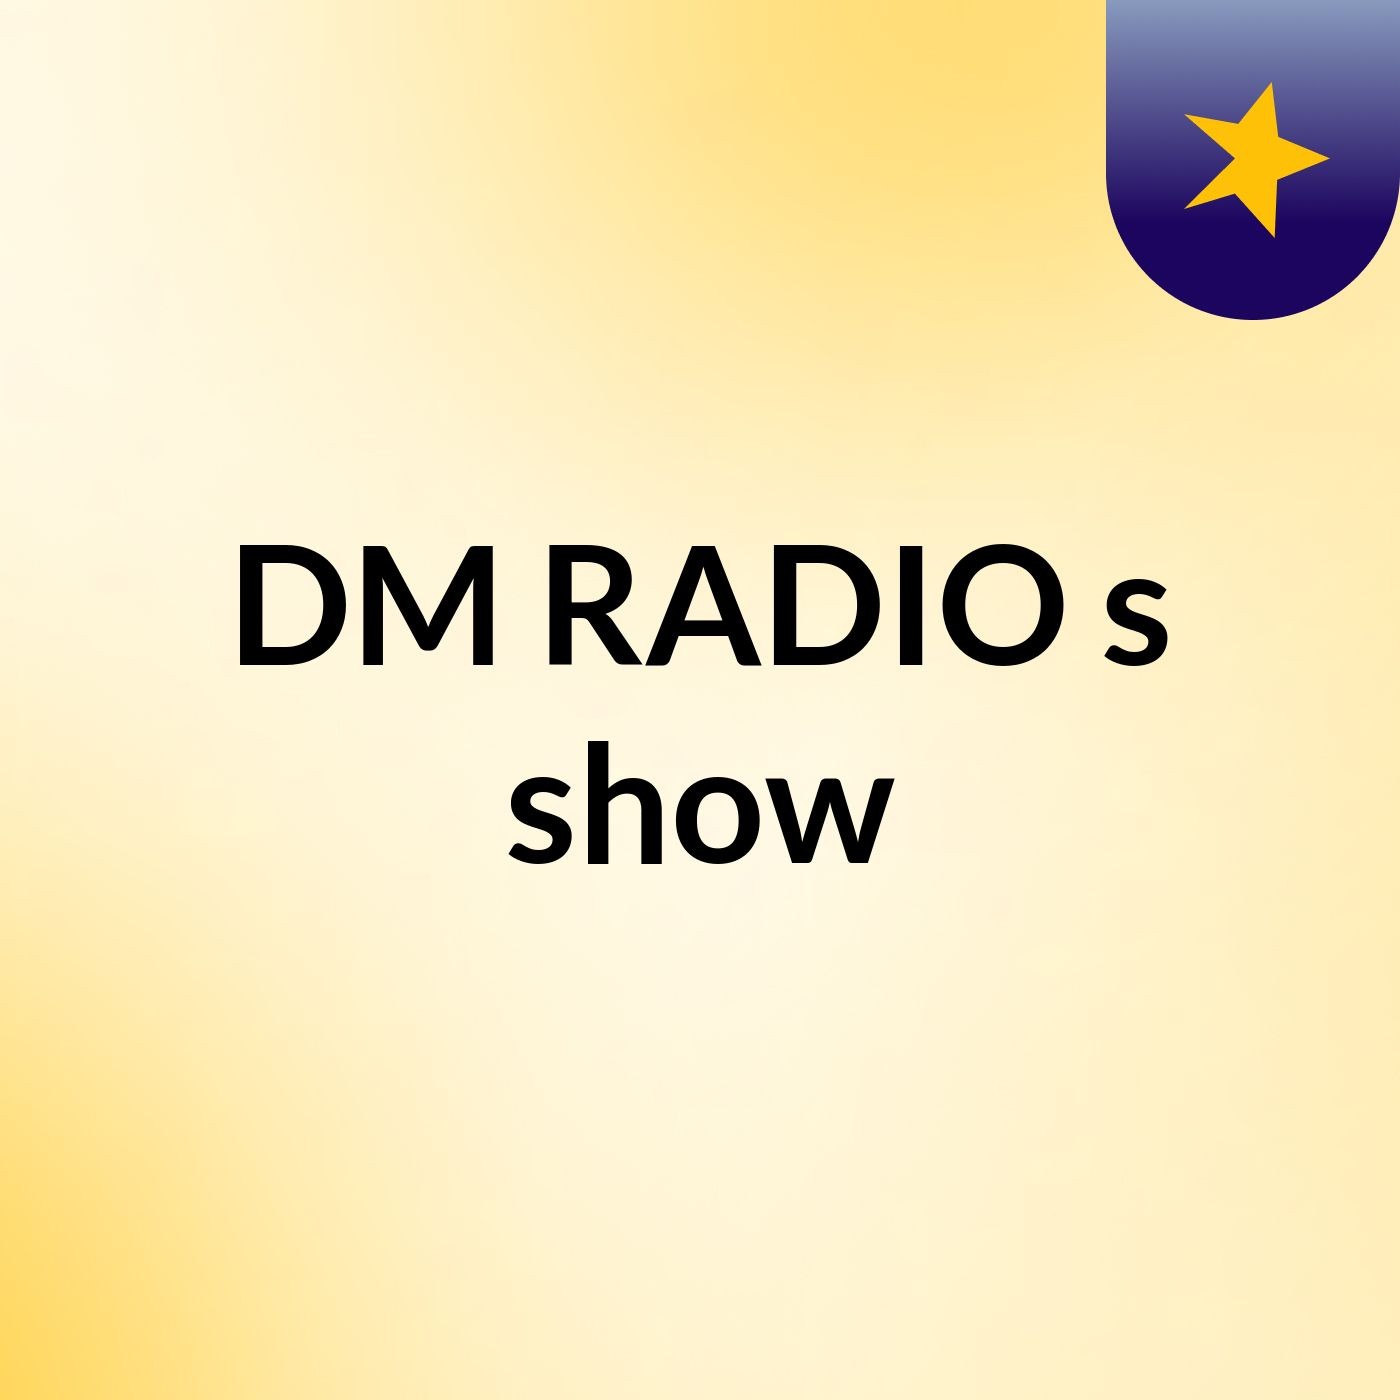 DM RADIO's show